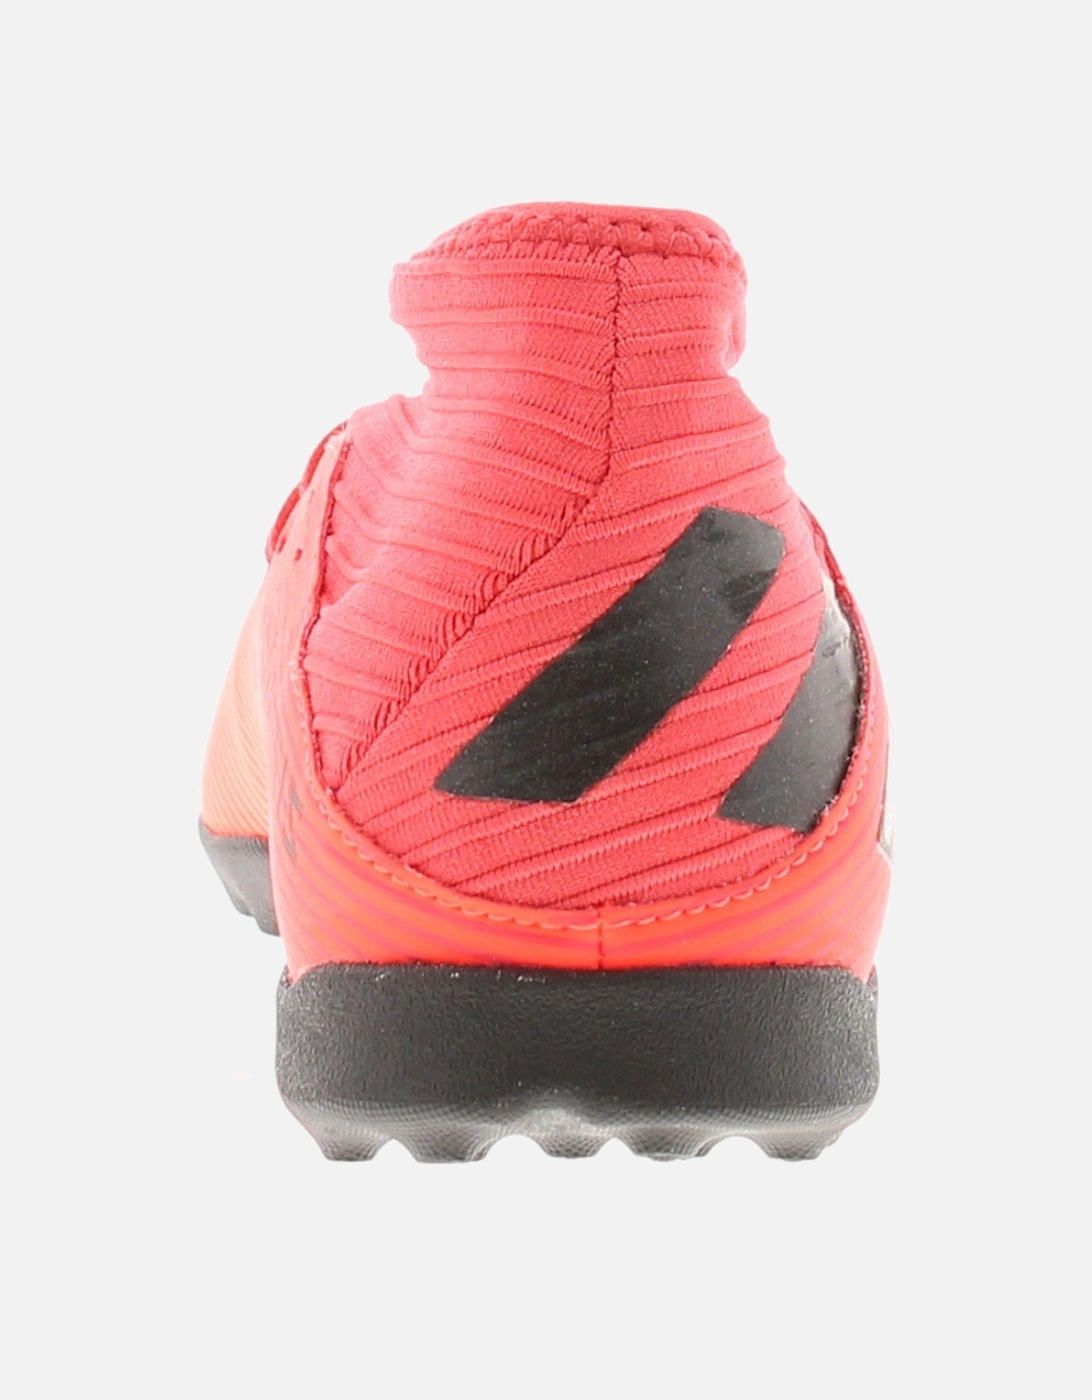 Adidas Performance Boys Trainers Junior Nemeziz 19 3 tf Lace Up red UK Size